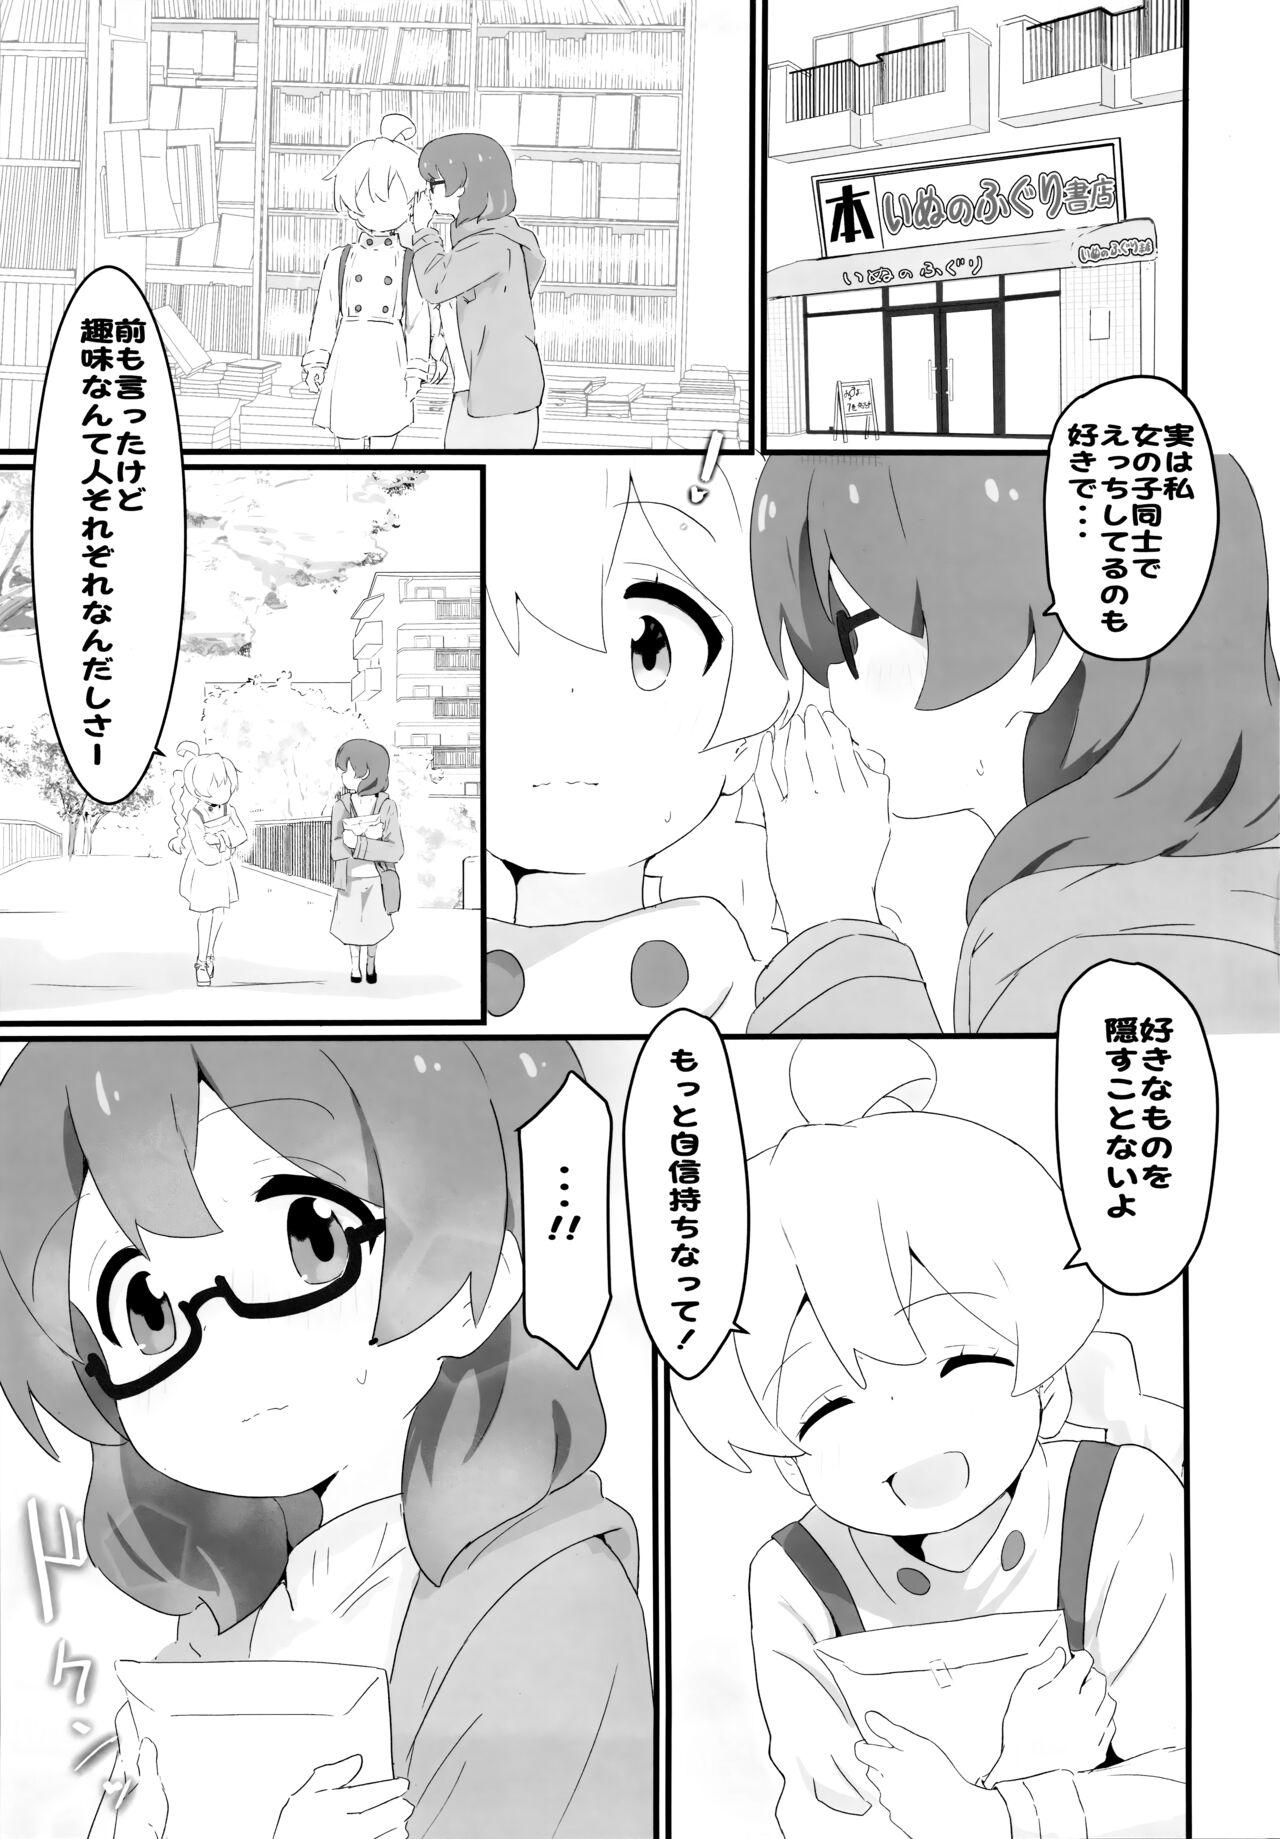 Nudist Watashi wa Mirusen nano! - Onii-chan wa oshimai 3way - Page 4